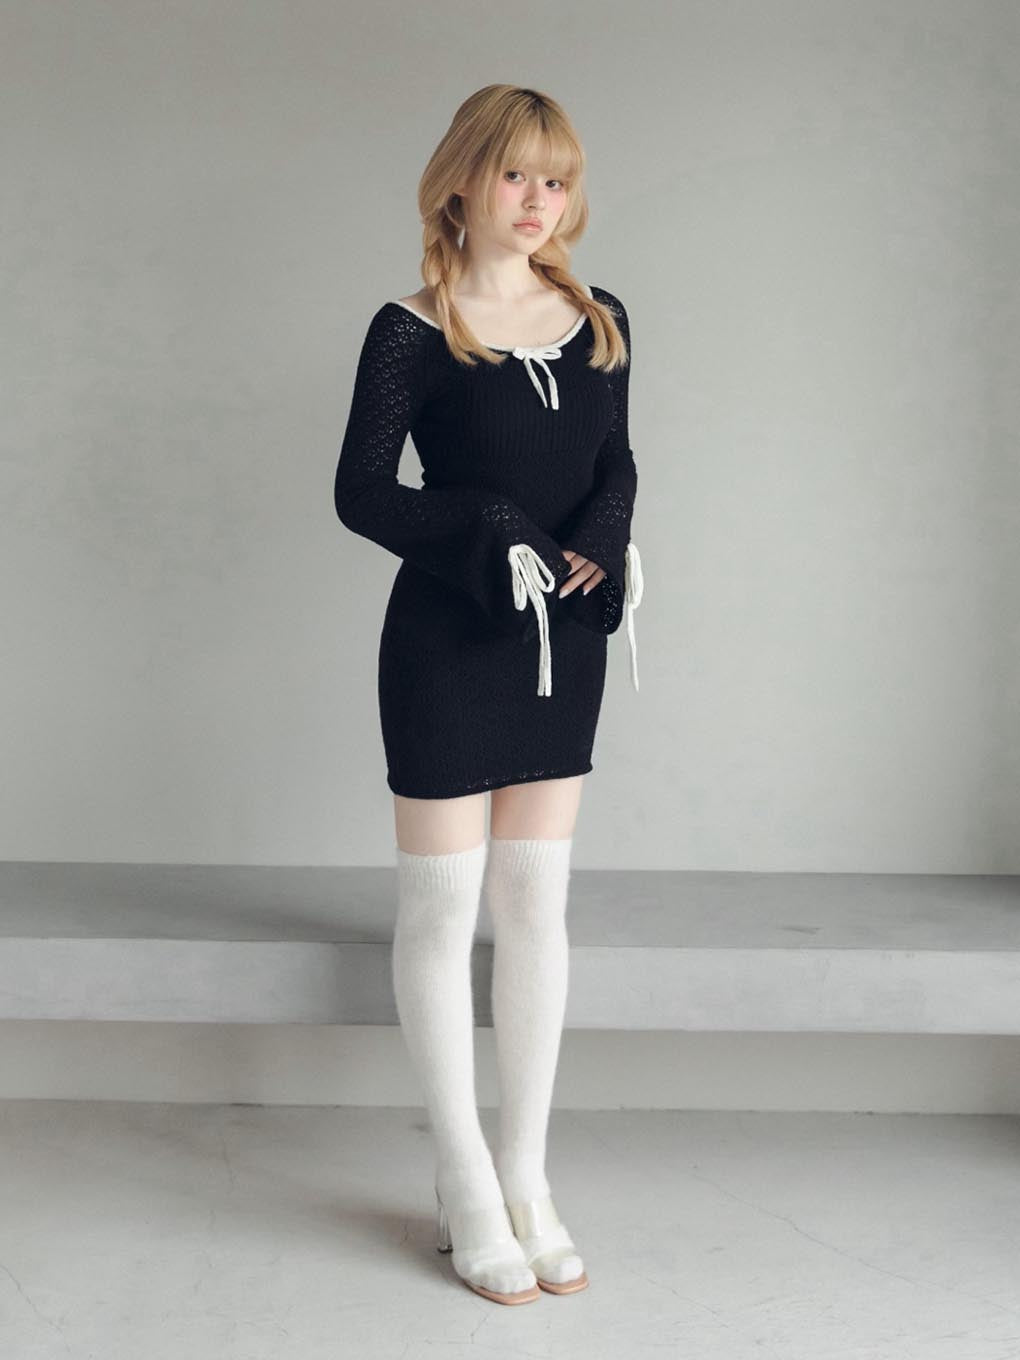 andma【 アンドマリー 】Lily crochet mini dress  ivory